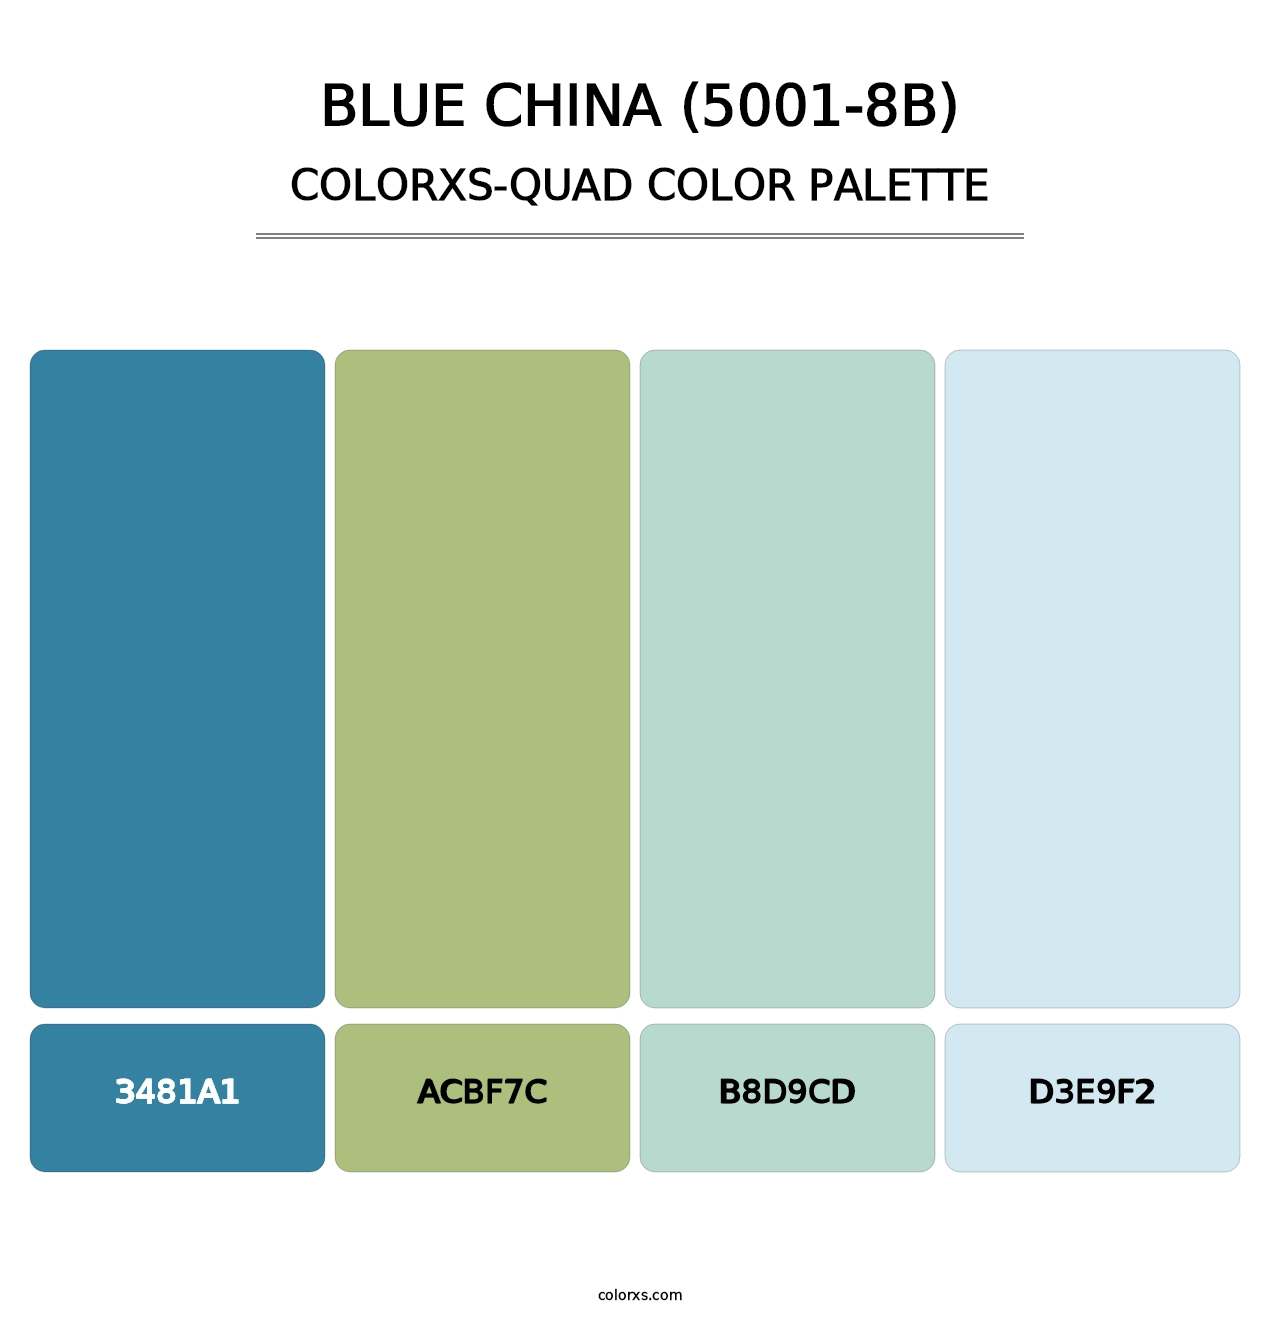 Blue China (5001-8B) - Colorxs Quad Palette